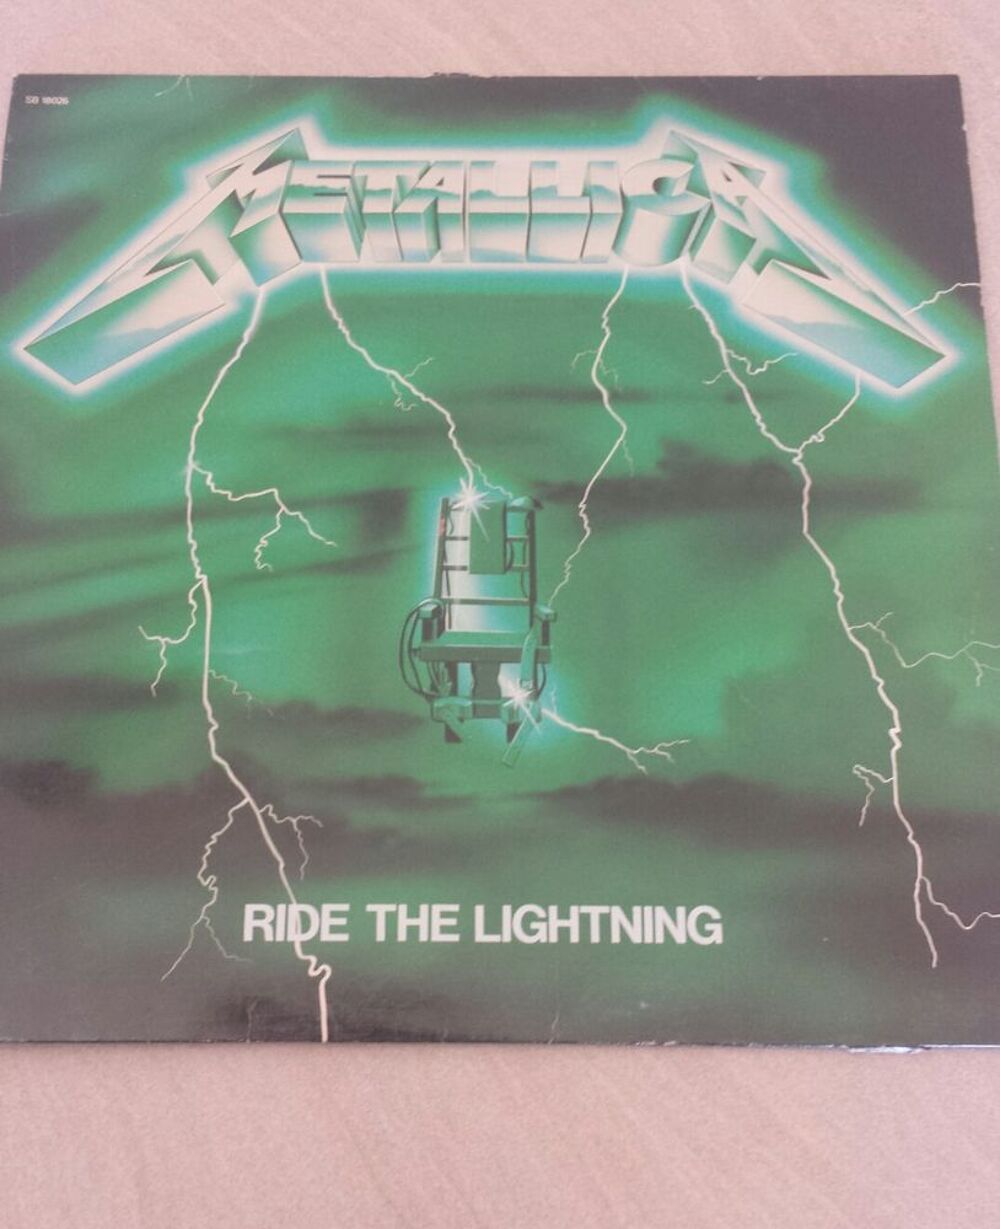 vinyle de Metallica Ride The Lightning pochette verte
CD et vinyles